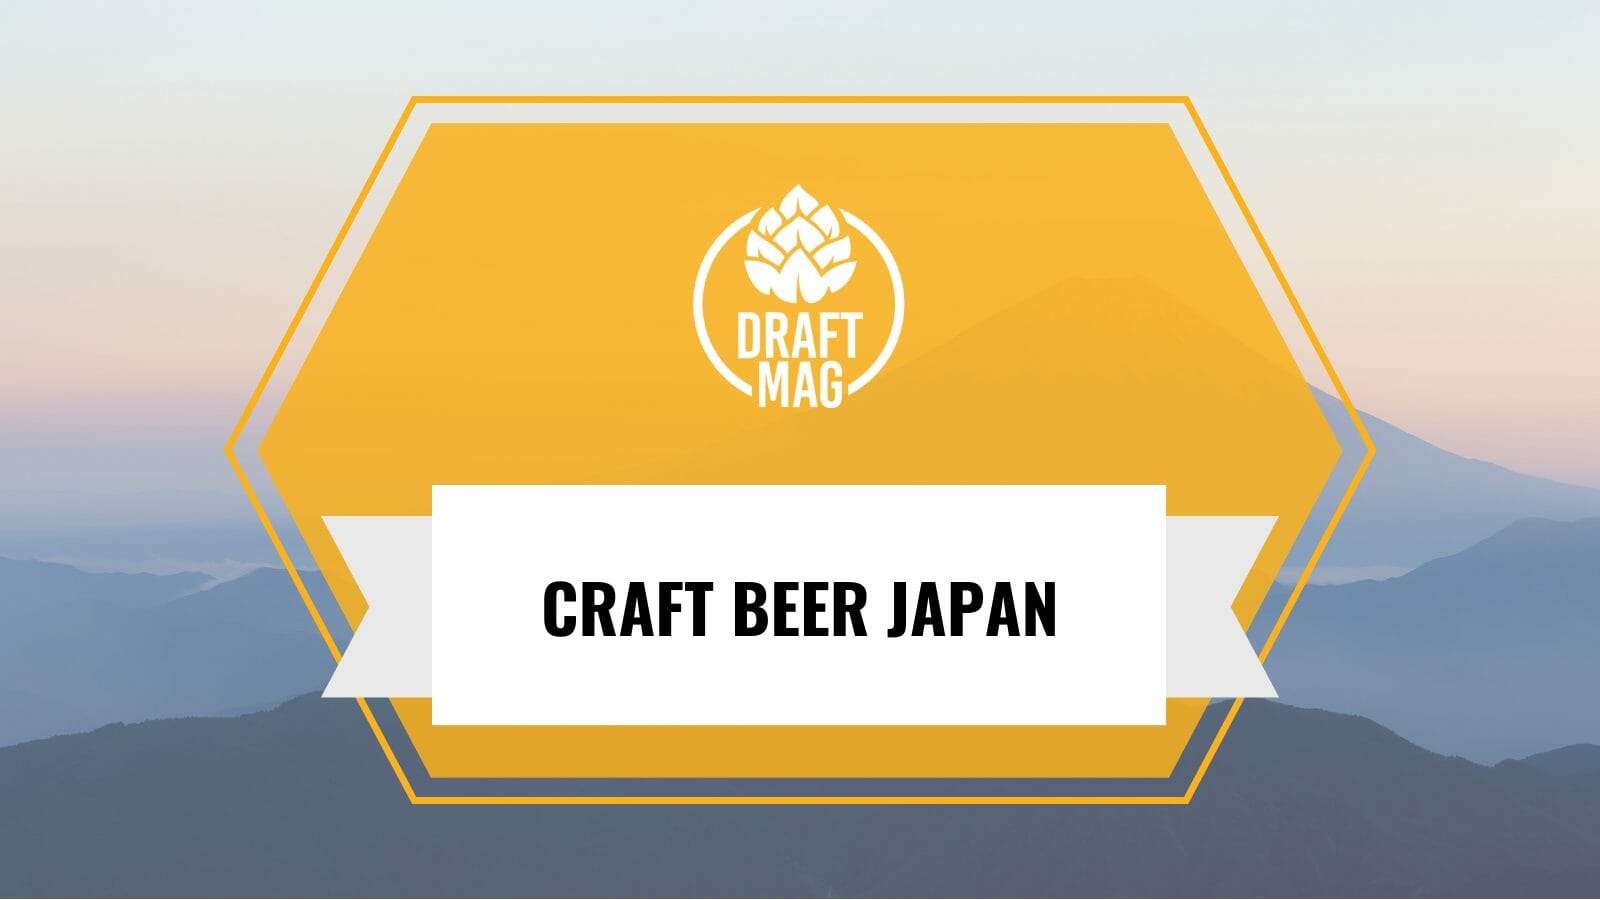 Craft beer japan